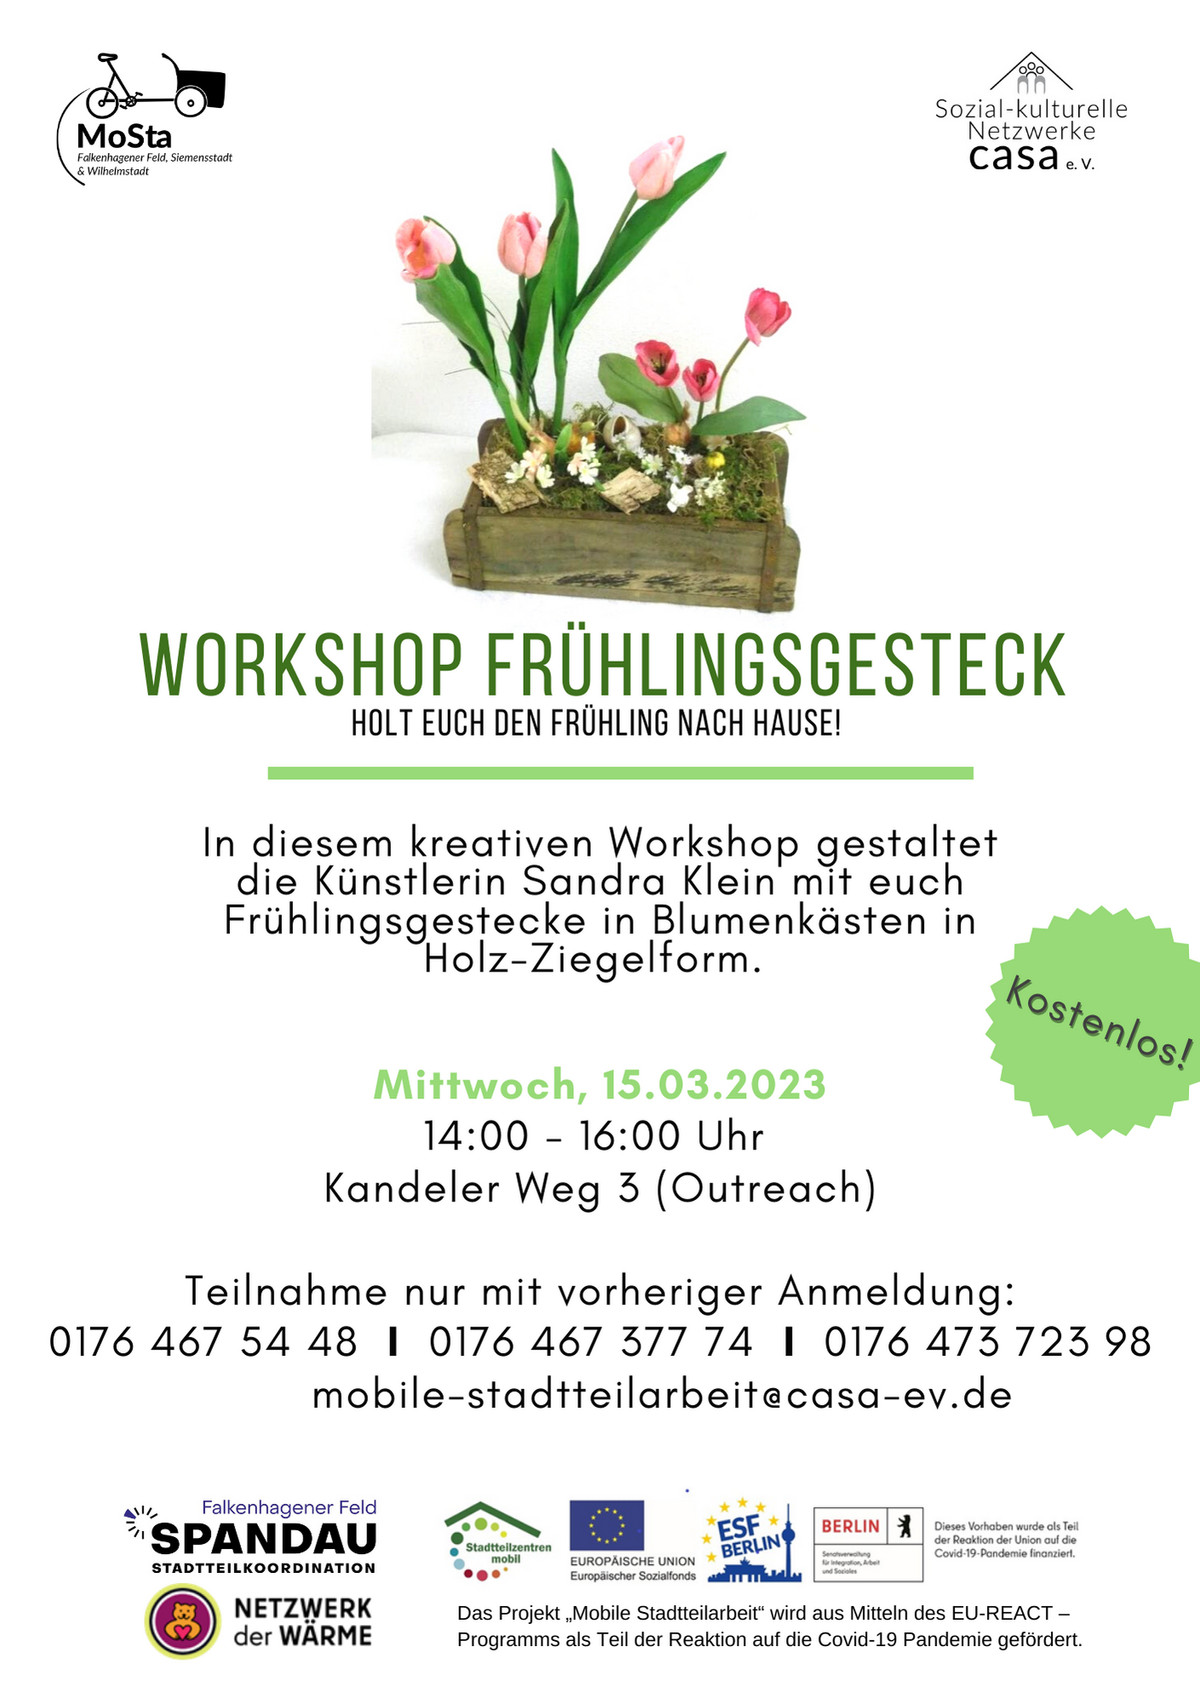 Workshop mit kostenlosem Frühlingsgesteck